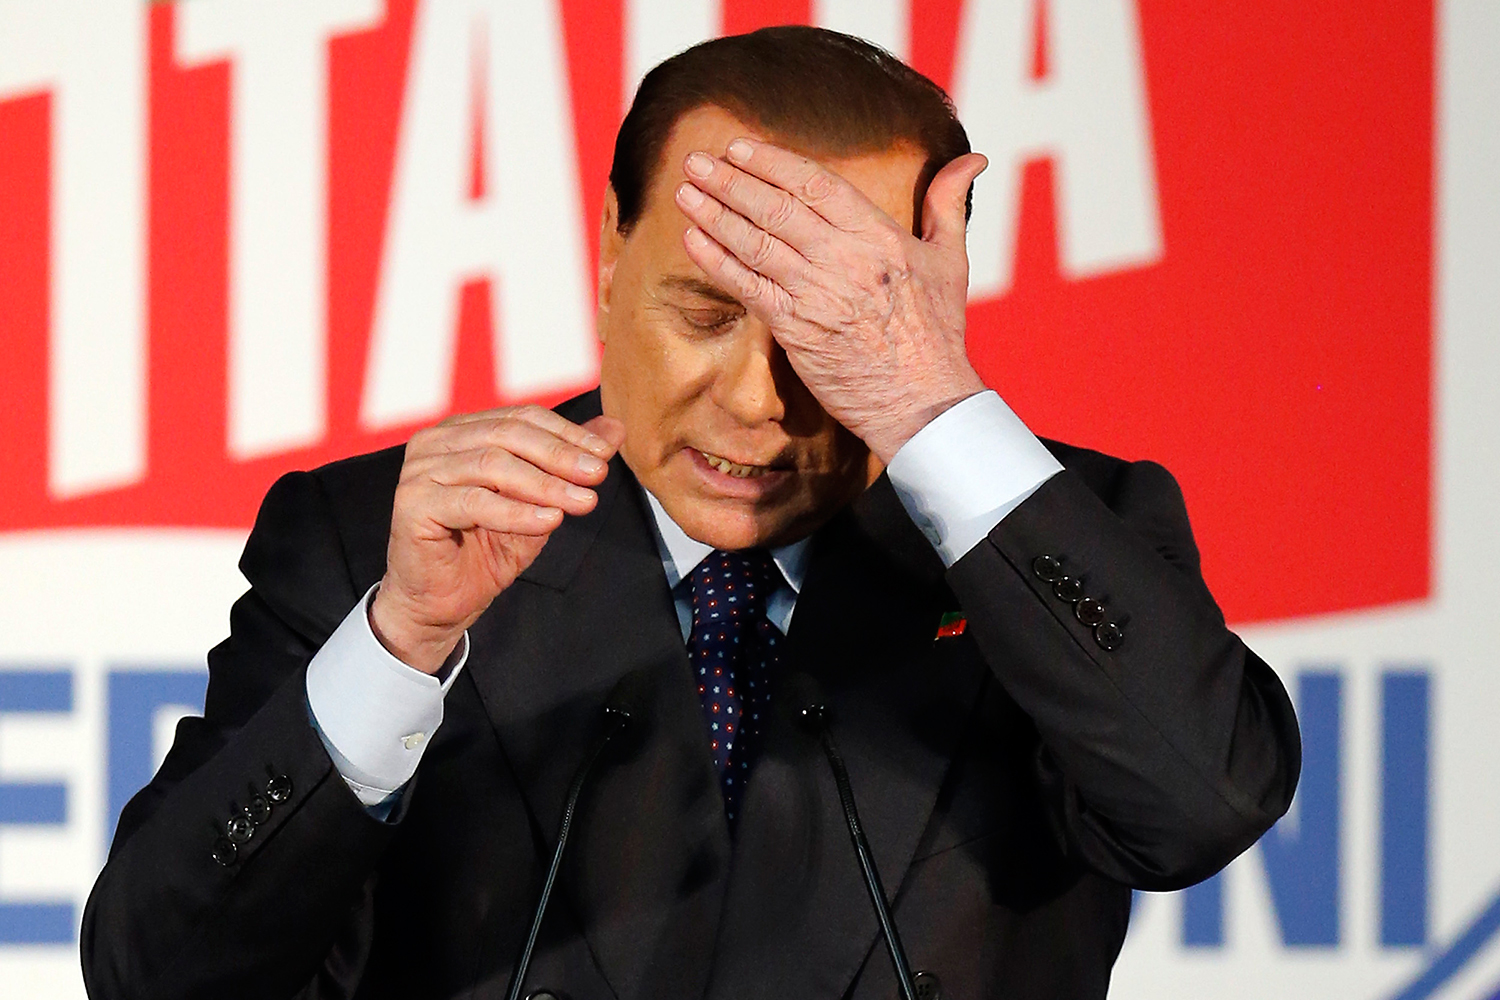 Berlusconi deberá pagar 1,4 millones de euros al mes a su ex mujer